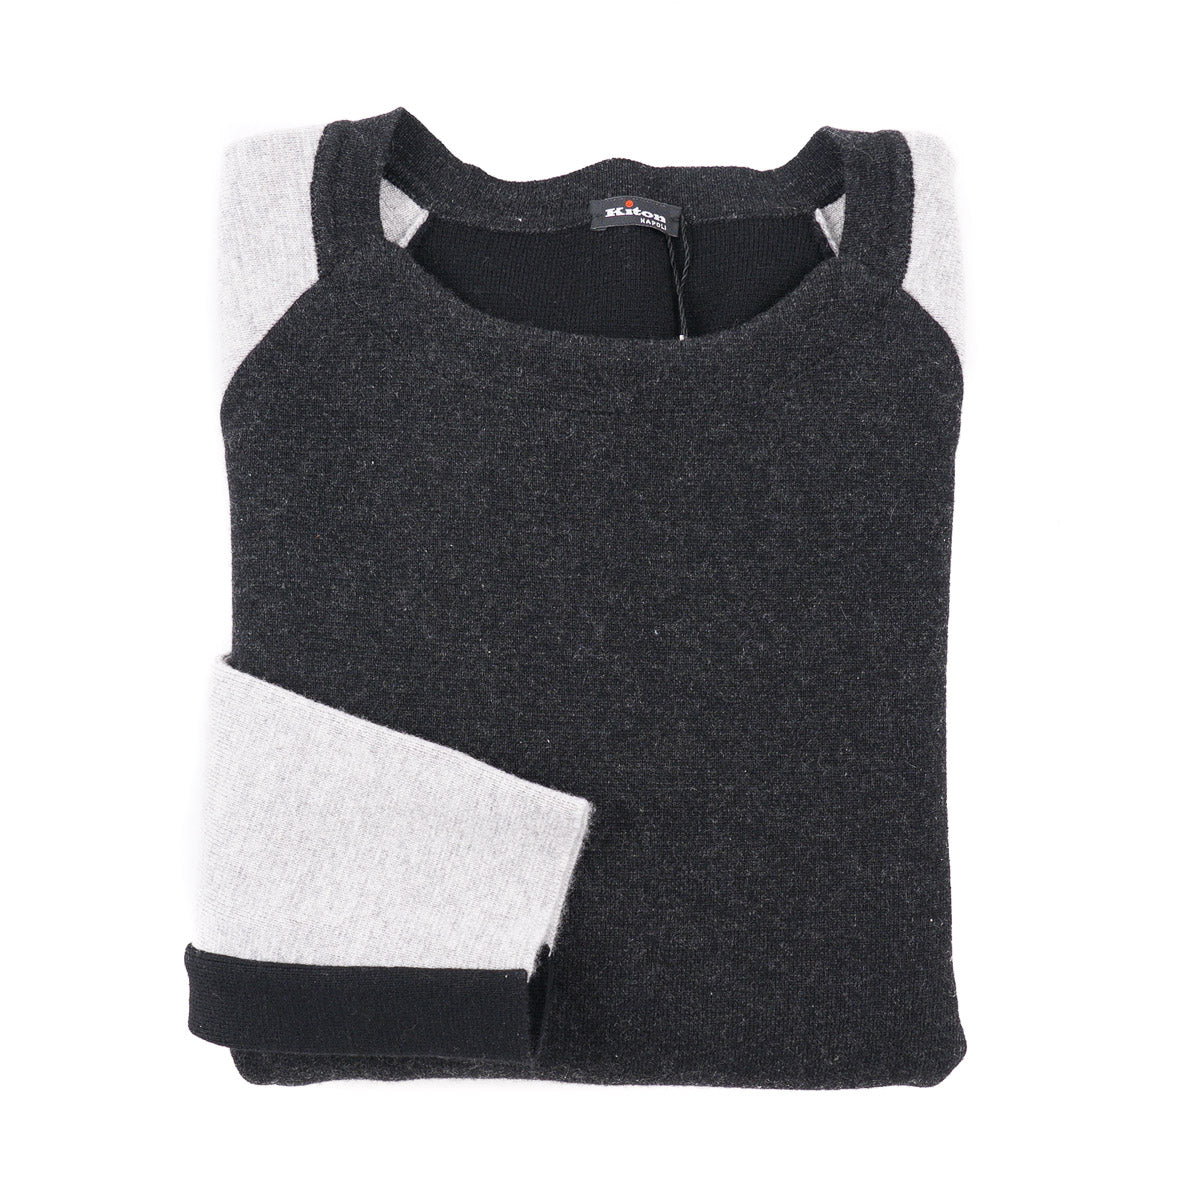 Kiton Colorblock Cashmere Sweater - Top Shelf Apparel